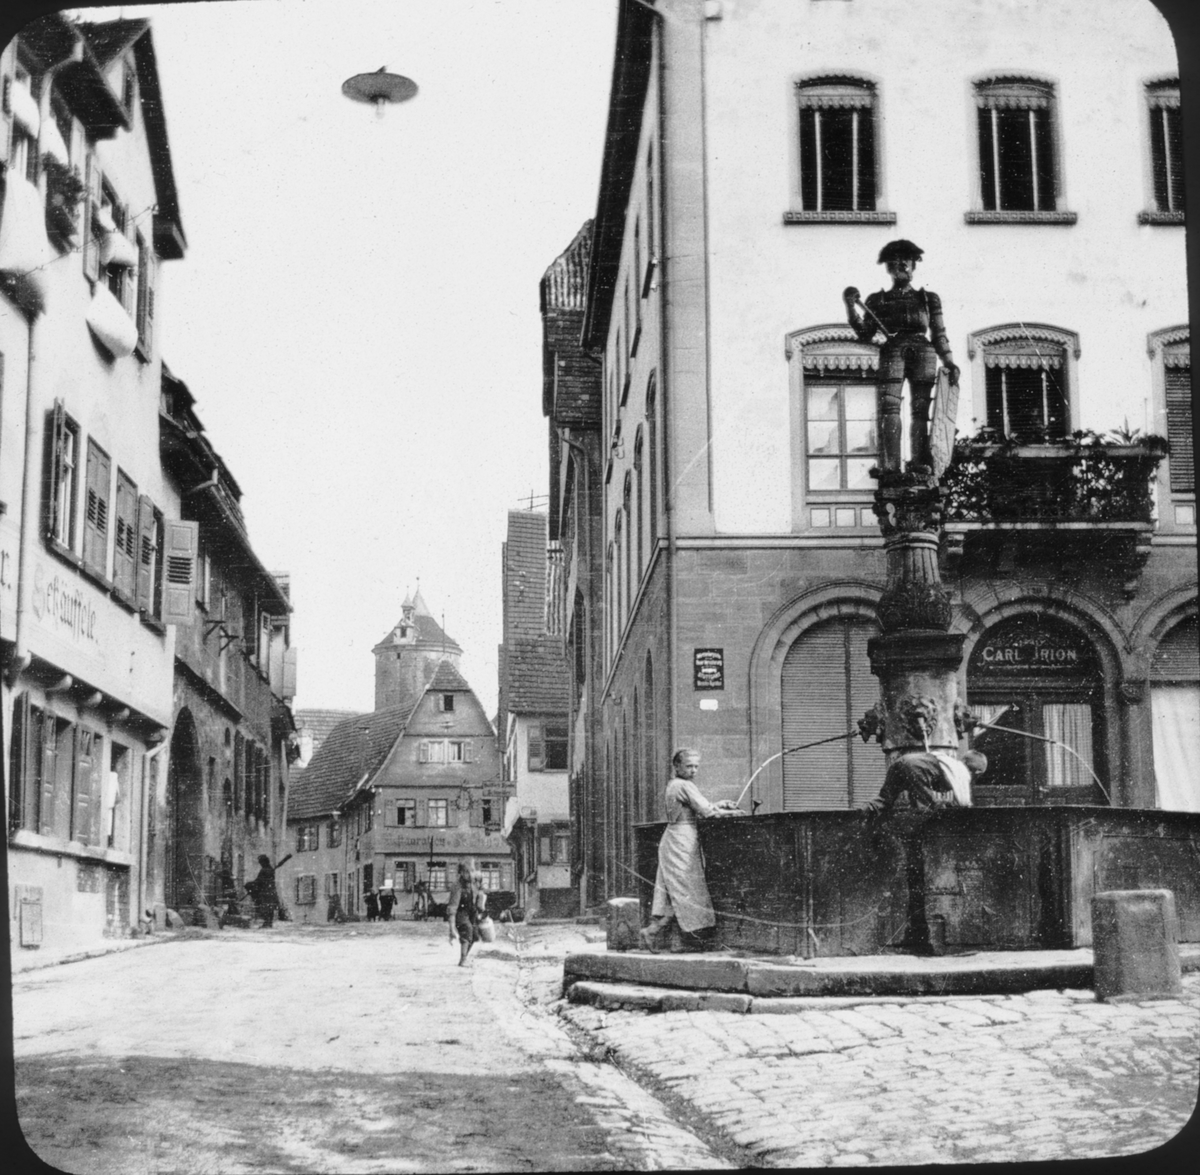 Skioptikonbild med motiv av fontän "Jörgle" på gata i Besigheim.
Bilden har förvarats i kartong märkt: Resan 1907. Besigheim 8. 29. Text på bild: "Neckar Eng."